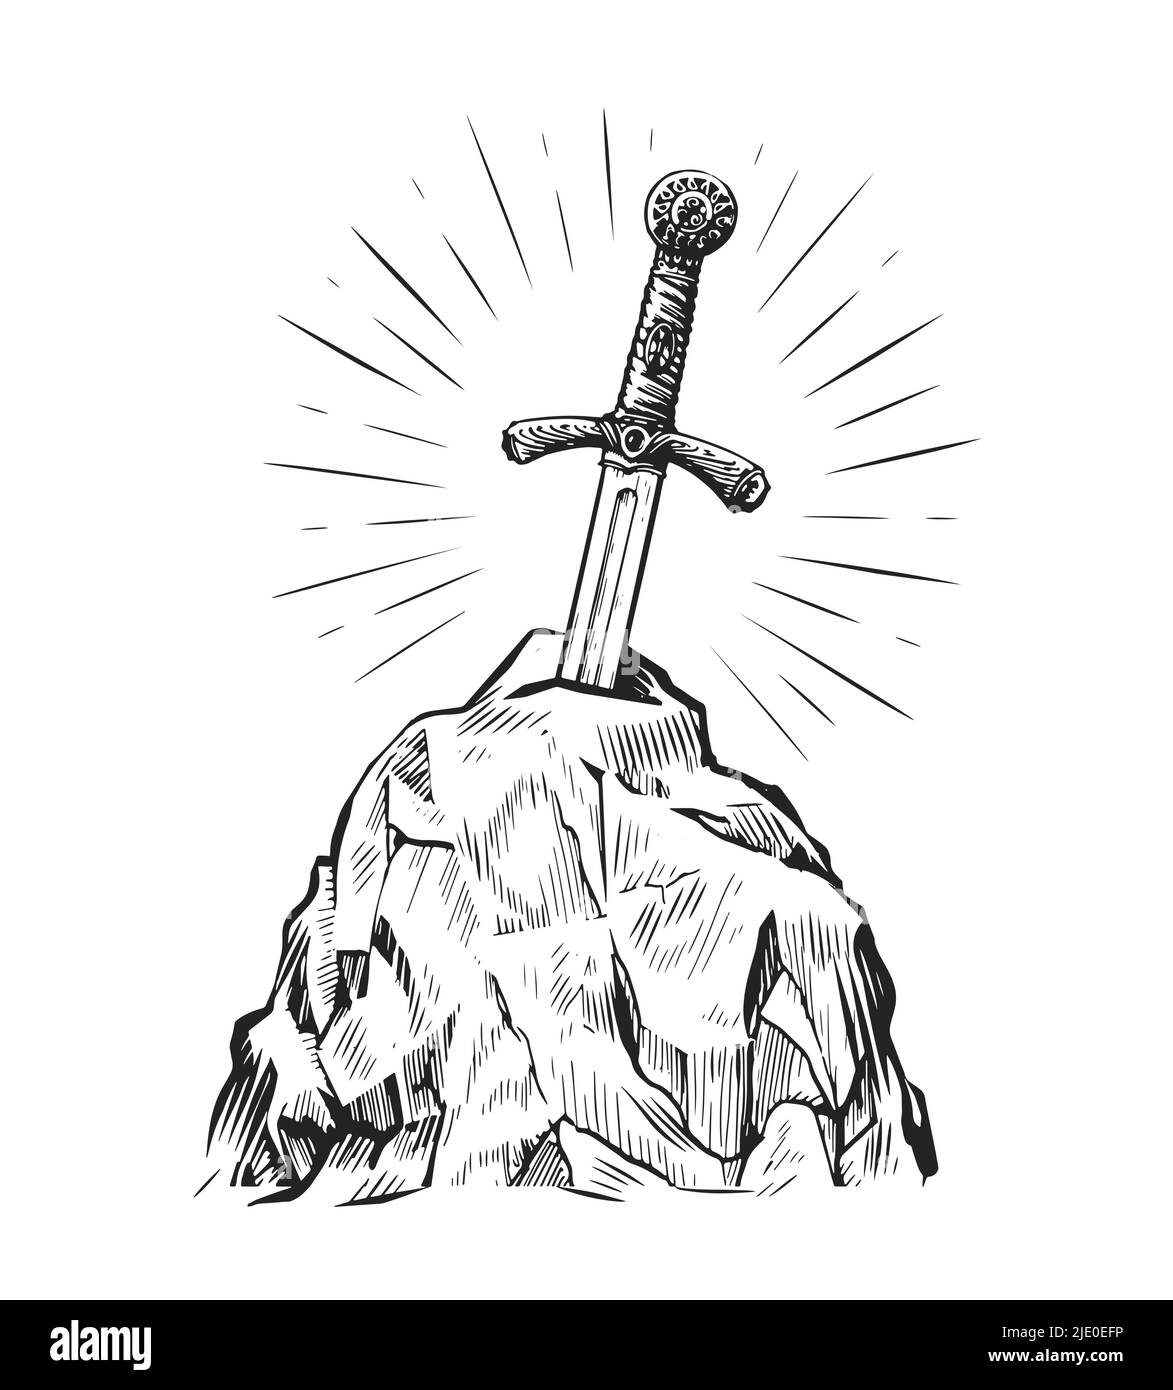 Épée d'Excalibur dans la pierre. Dessin dessiné à la main dans un style de gravure vintage. Illustration vectorielle Illustration de Vecteur